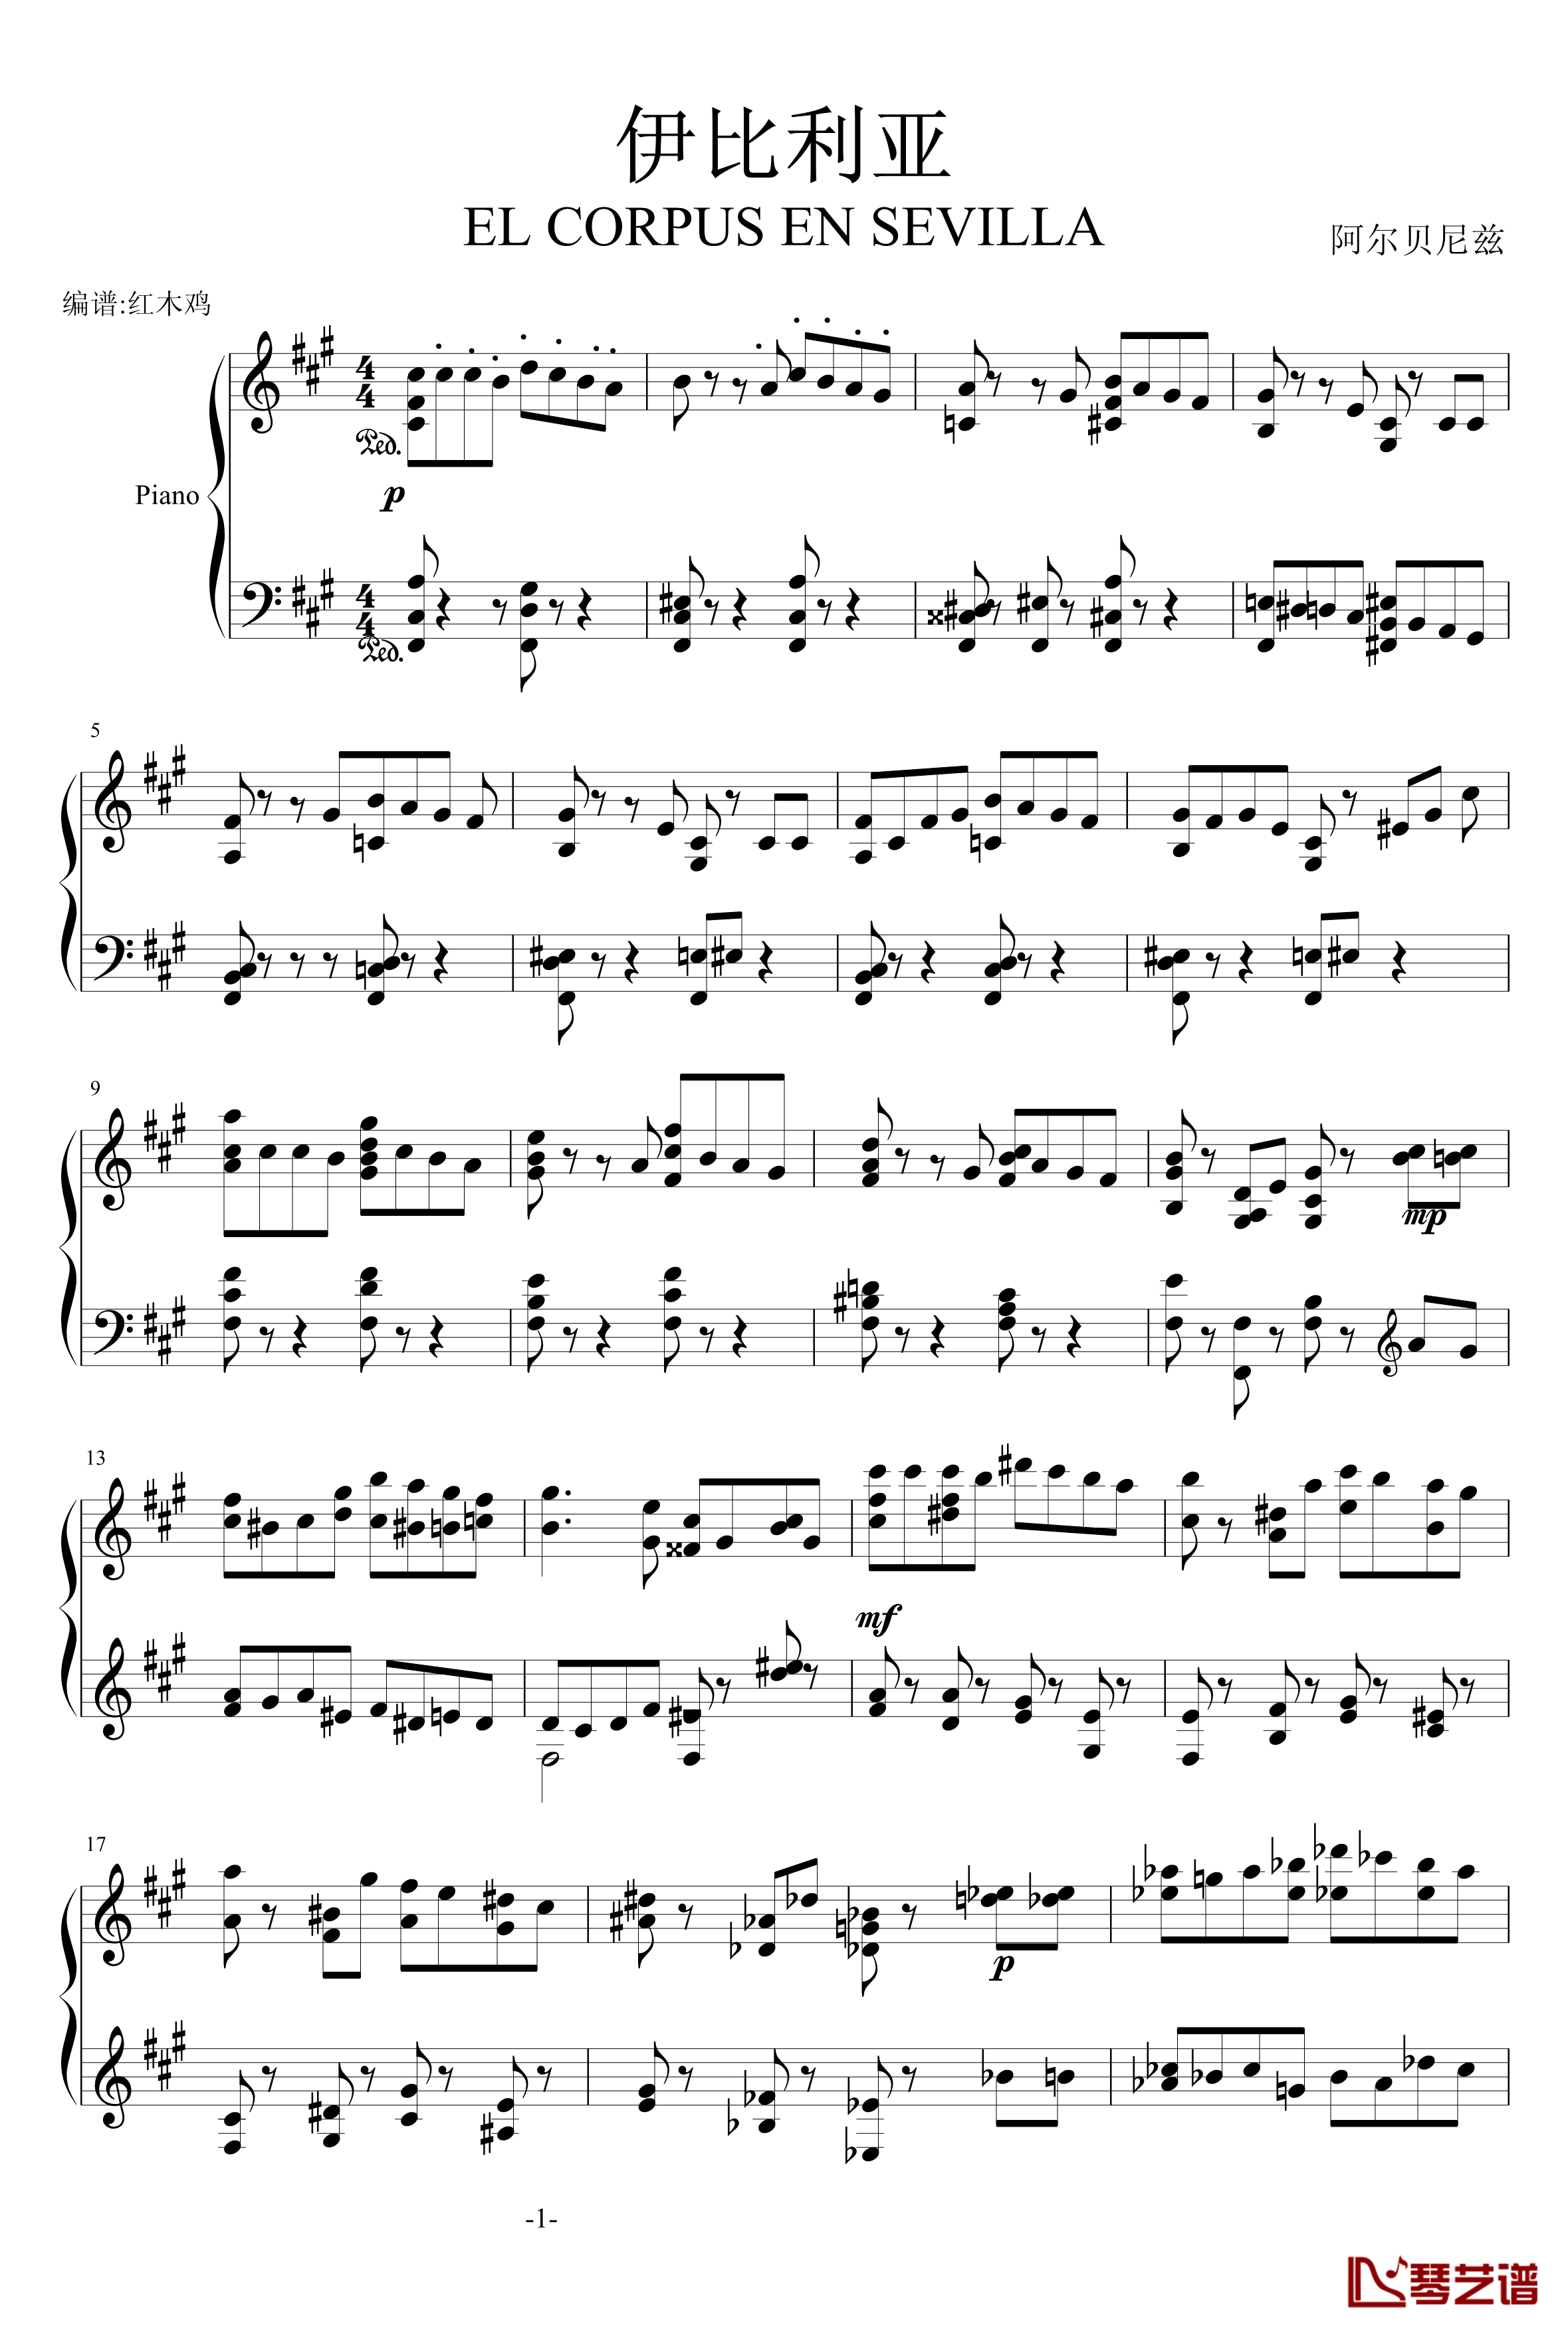 伊比利亚塞维利亚的圣体祭钢琴谱-阿尔贝兹尼1